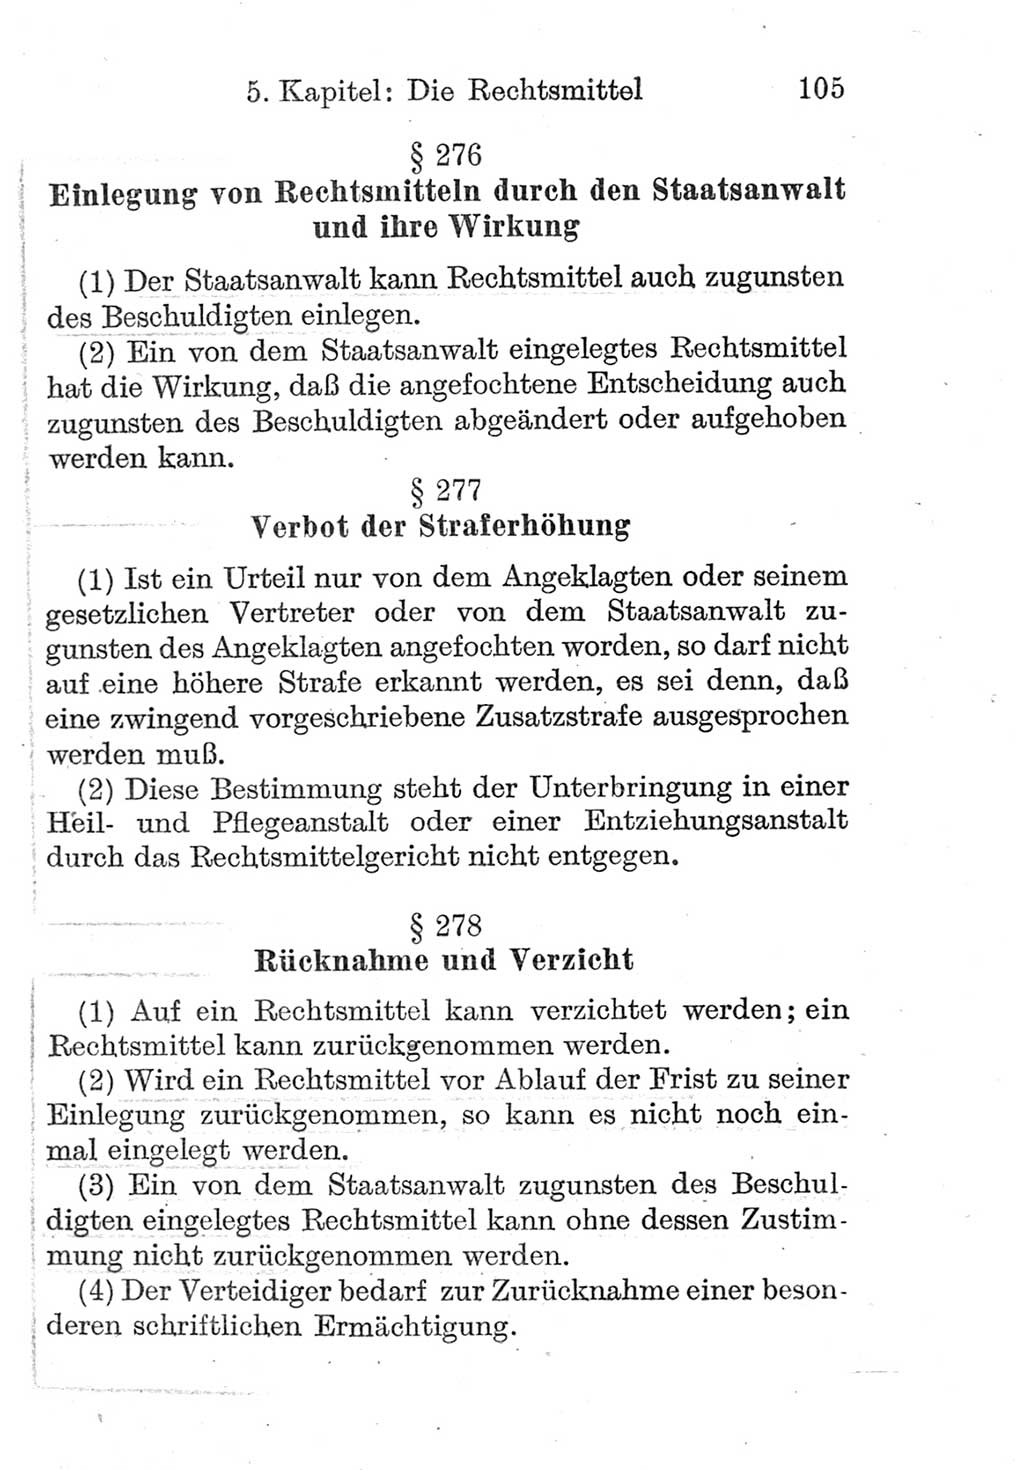 Strafprozeßordnung (StPO), Gerichtsverfassungsgesetz (GVG), Staatsanwaltsgesetz (StAG) und Jugendgerichtsgesetz (JGG) [Deutsche Demokratische Republik (DDR)] 1952, Seite 105 (StPO GVG StAG JGG DDR 1952, S. 105)